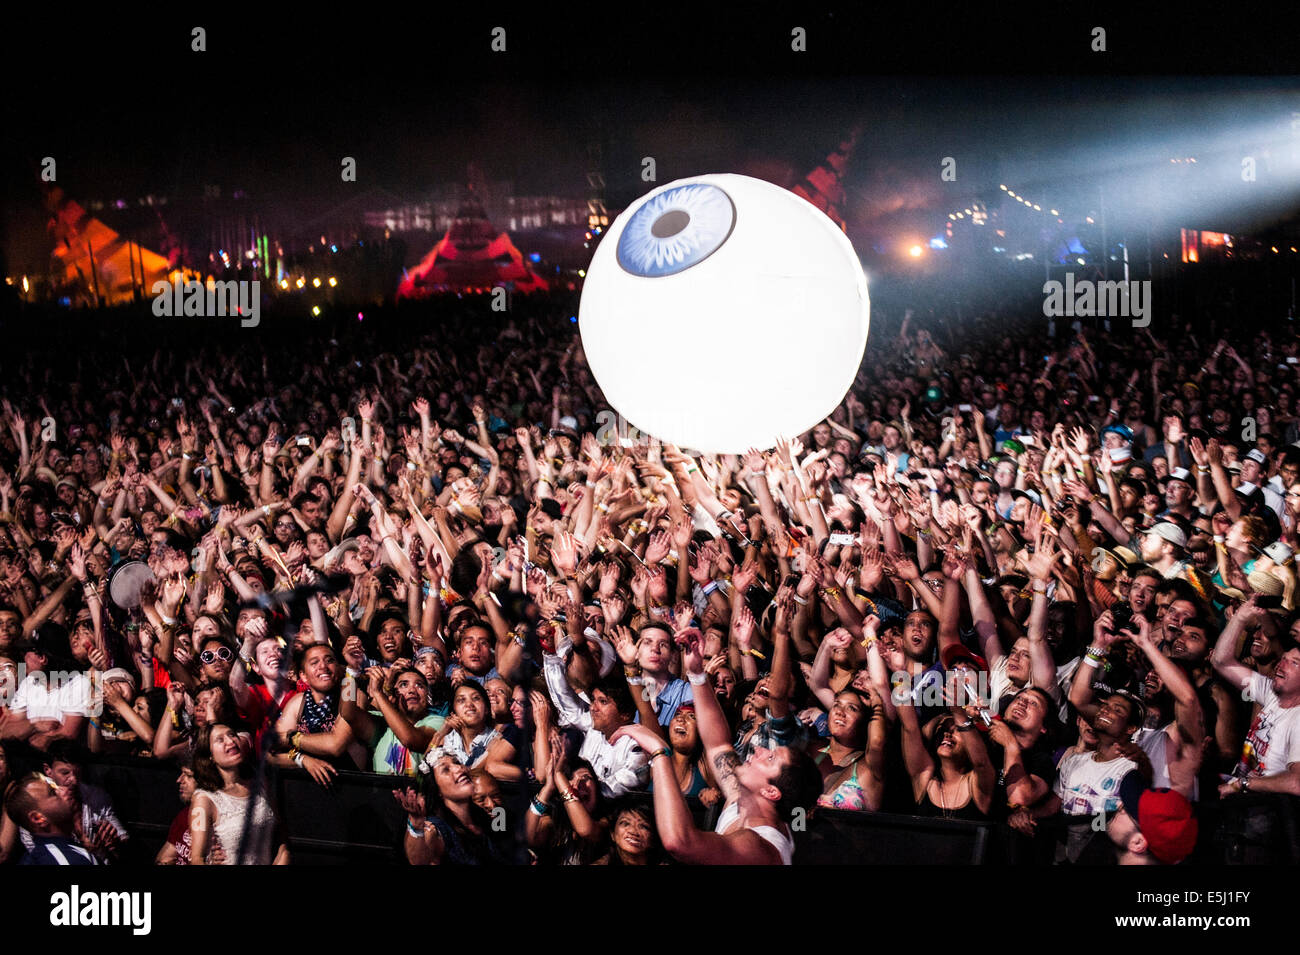 Musik-Fans eine Beach-Ball-Art von sprengen Augapfel Ball durch eine massive Menge beim Coachella Musikfestival Prellen Stockfoto